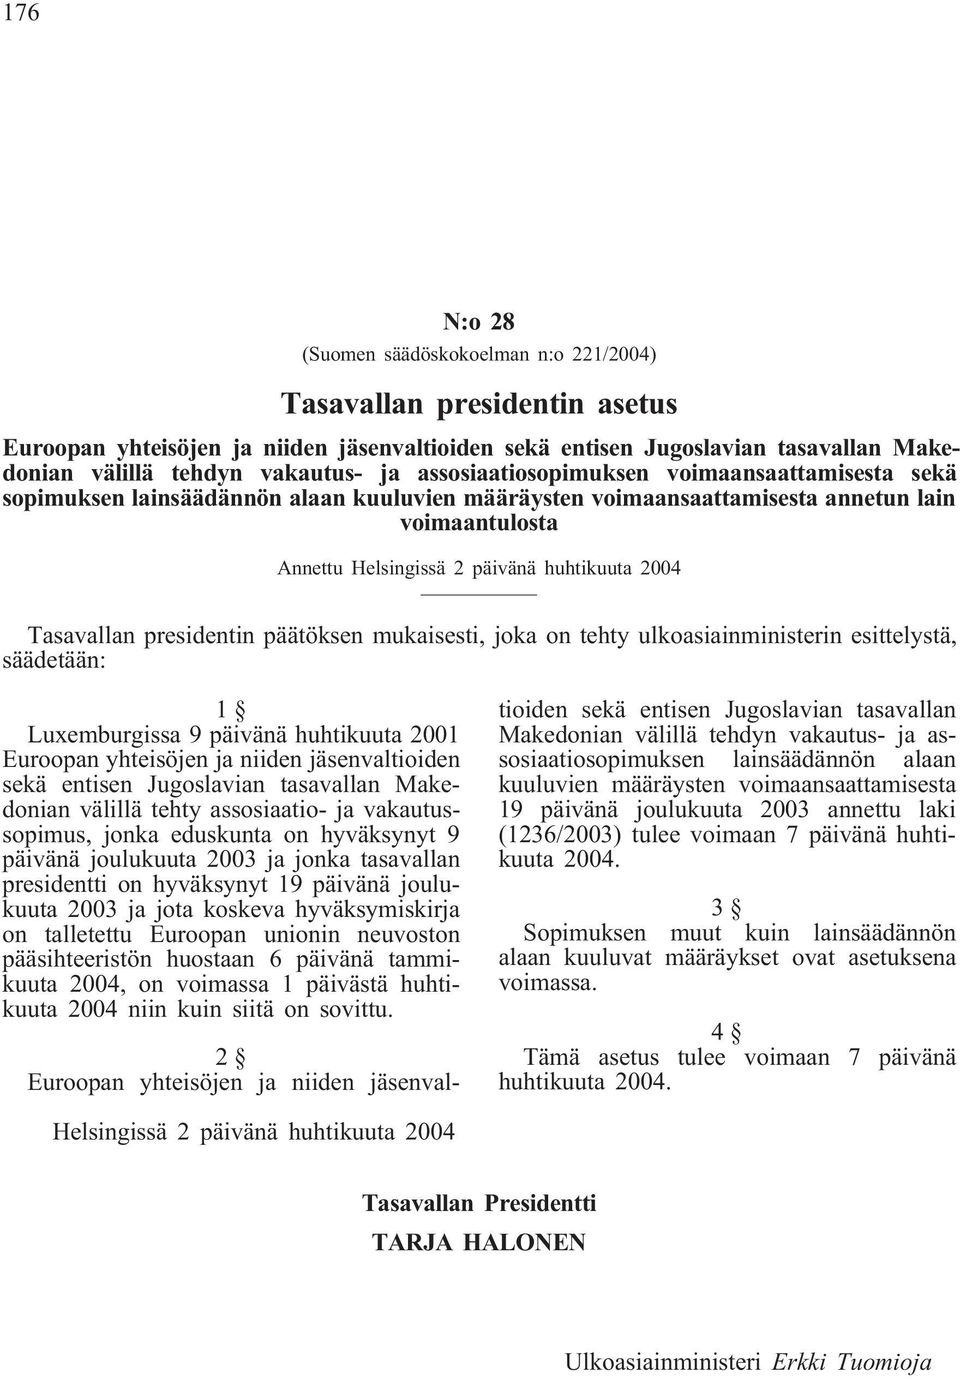 Tasavallan presidentin päätöksen mukaisesti, joka on tehty ulkoasiainministerin esittelystä, säädetään: 1 Luxemburgissa 9 päivänä huhtikuuta 2001 Euroopan yhteisöjen ja niiden jäsenvaltioiden sekä